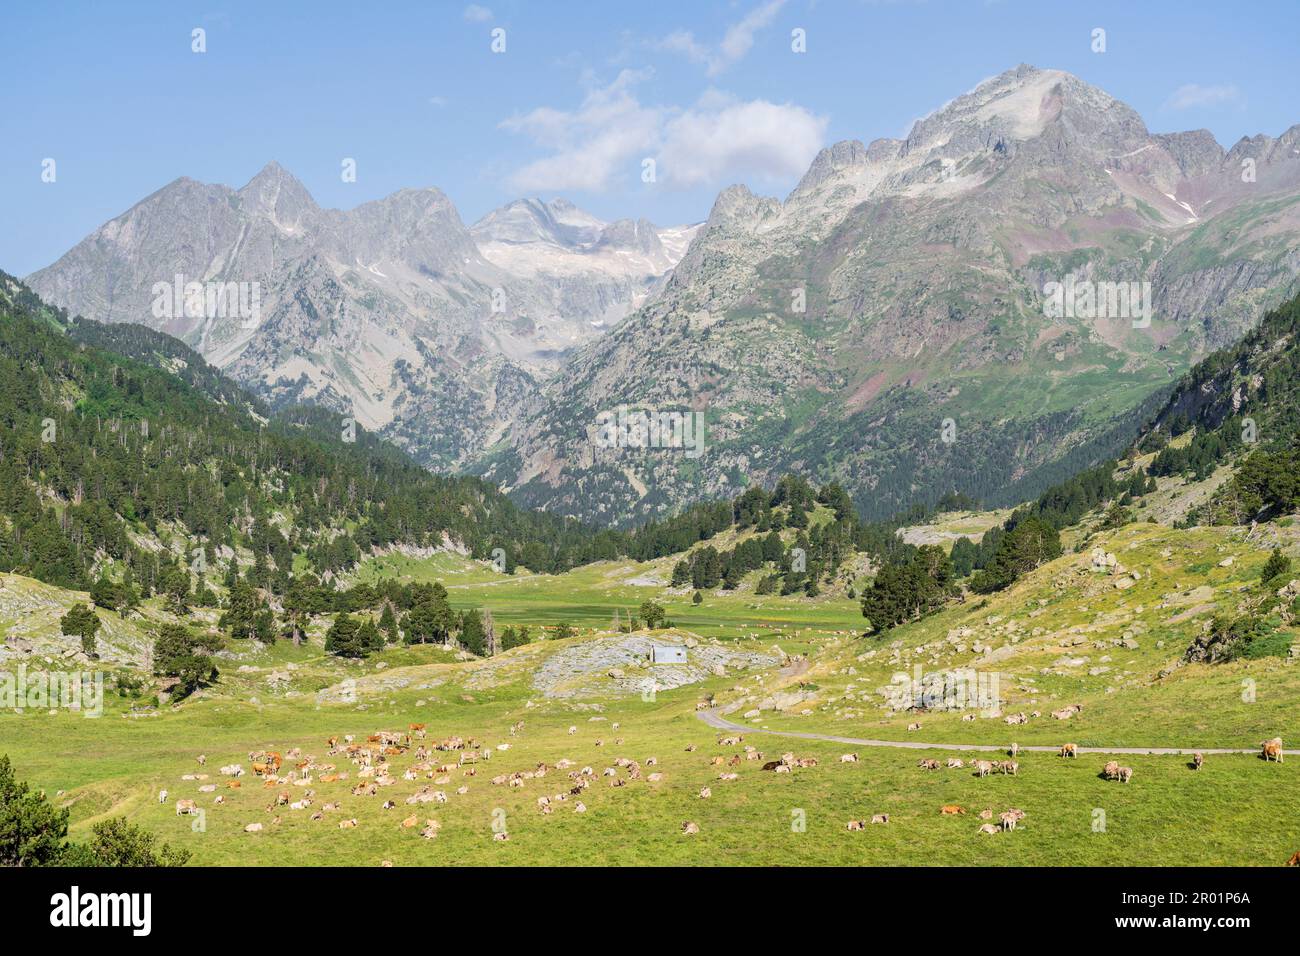 herd of cows in Plan dEstan, Benasque Valley, Huesca, Pyrenean mountain range, Spain. Stock Photo